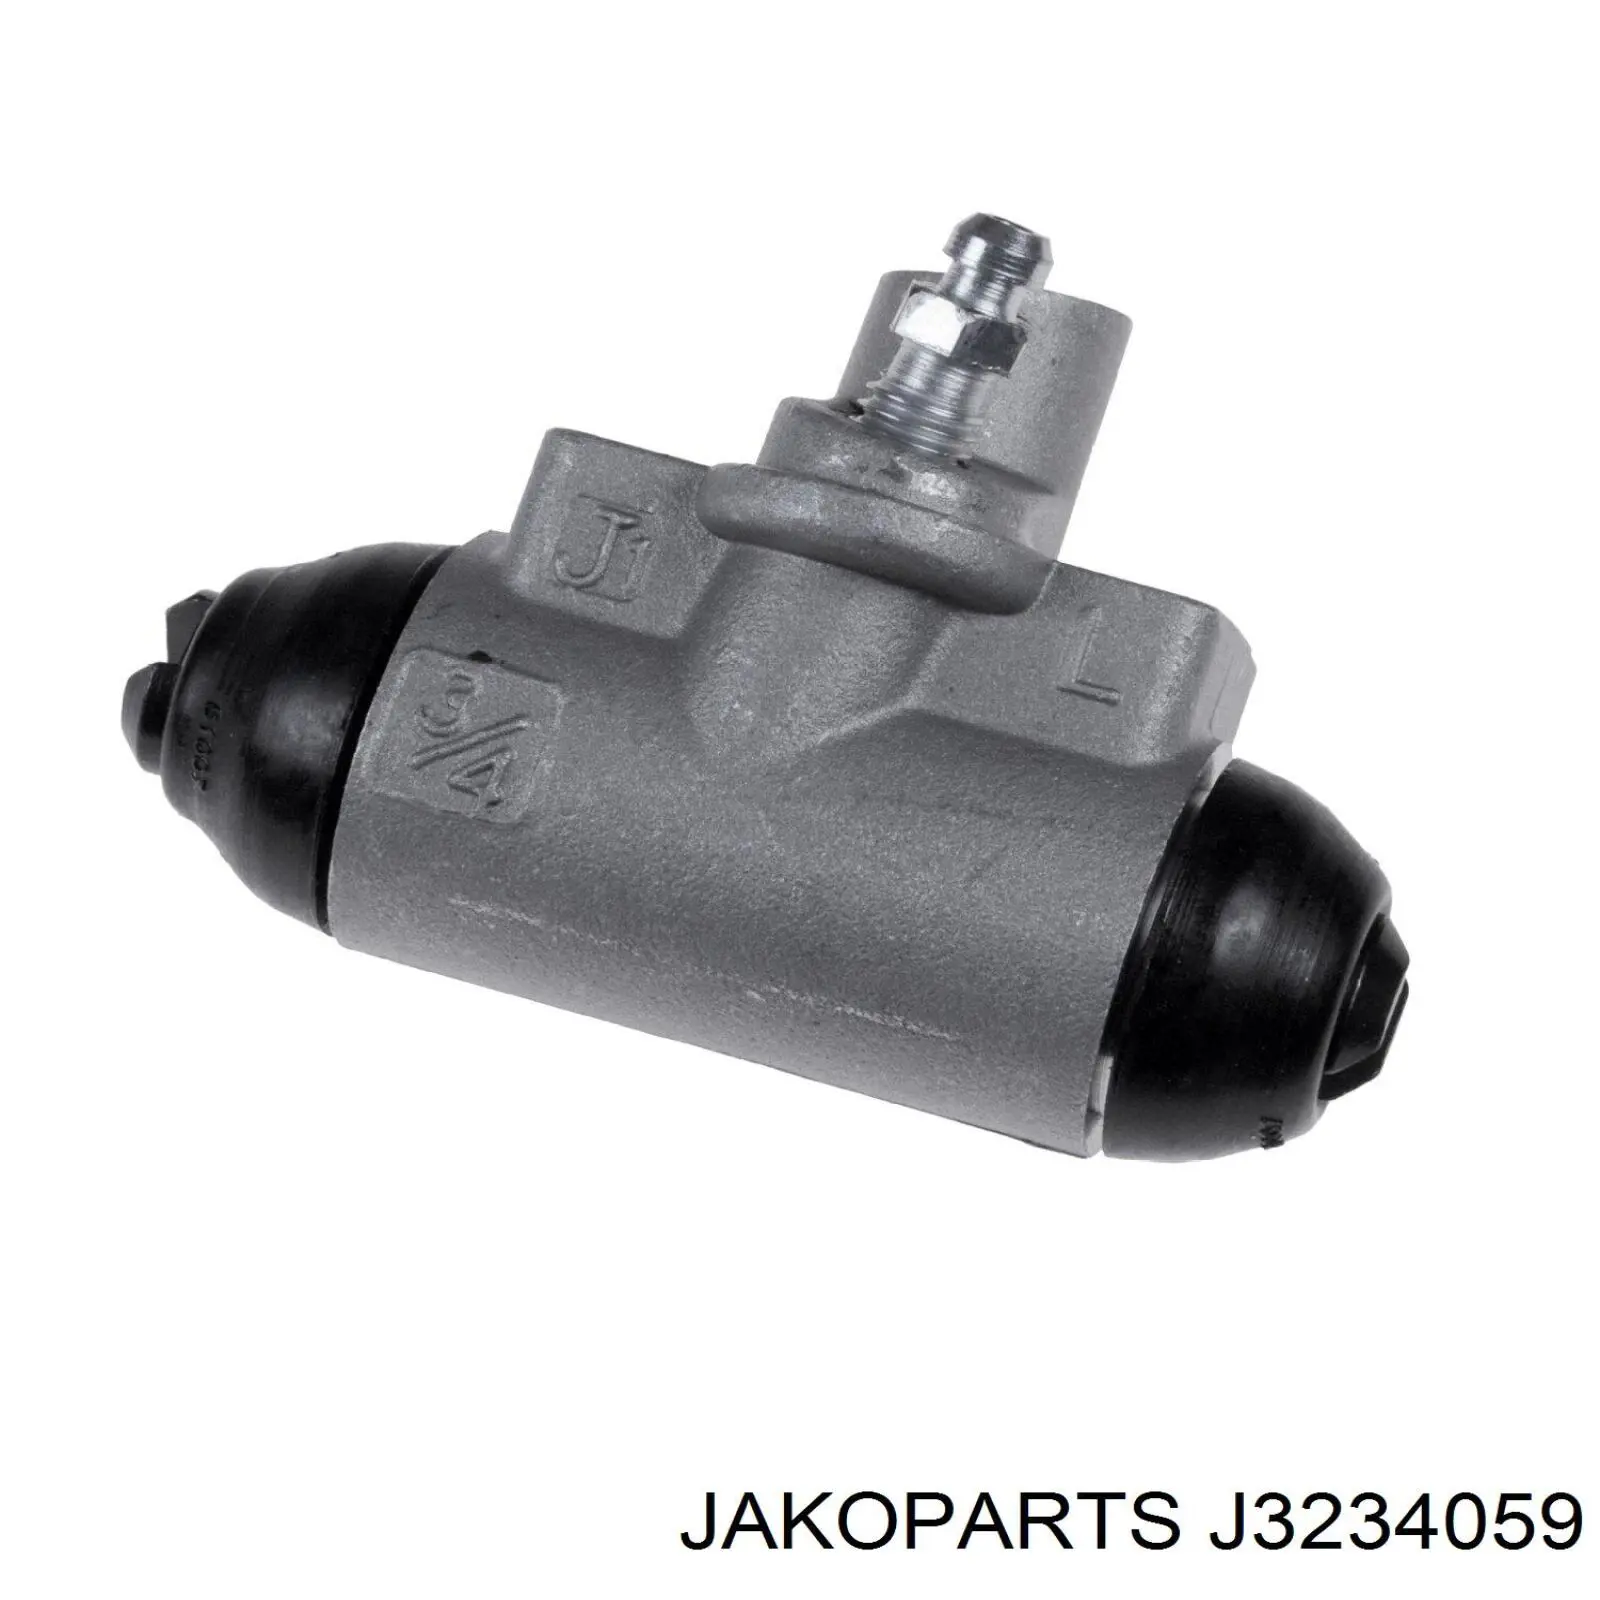 J3234059 Jakoparts cilindro de freno de rueda trasero